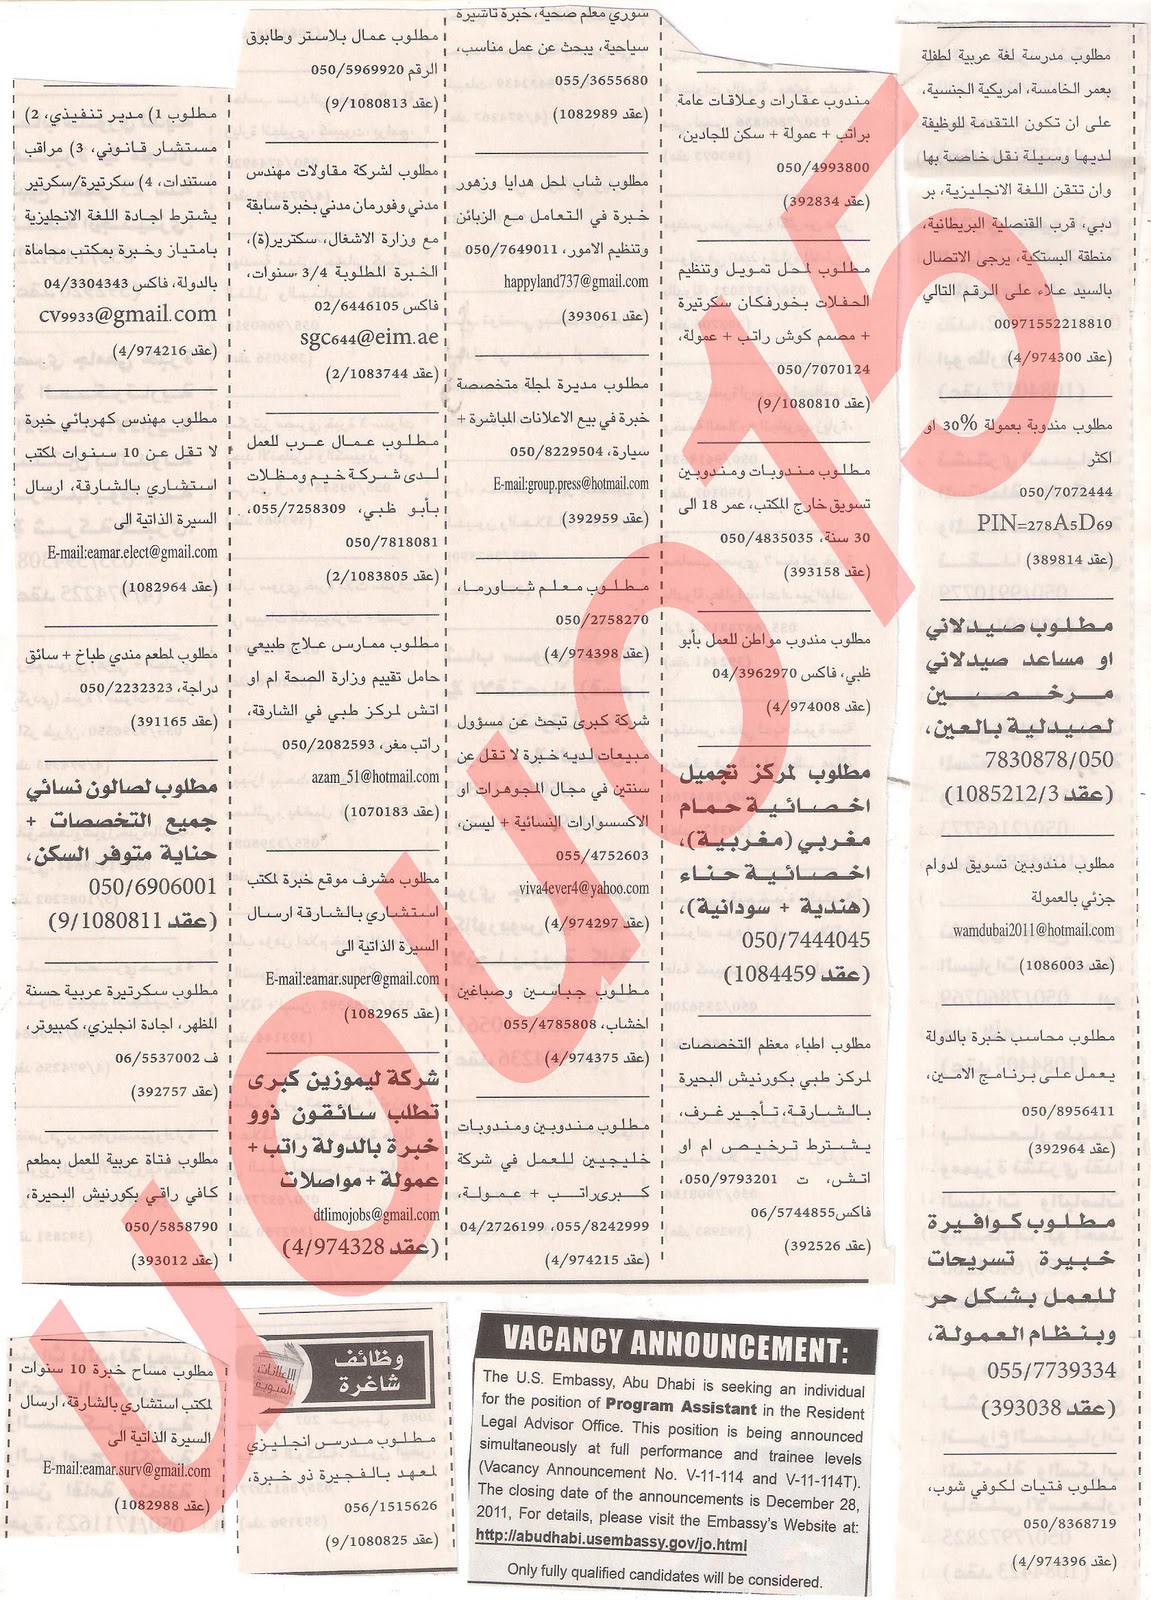 وظائف من جريدة الخليج الاربعاء 21\12\2011  Picture+004